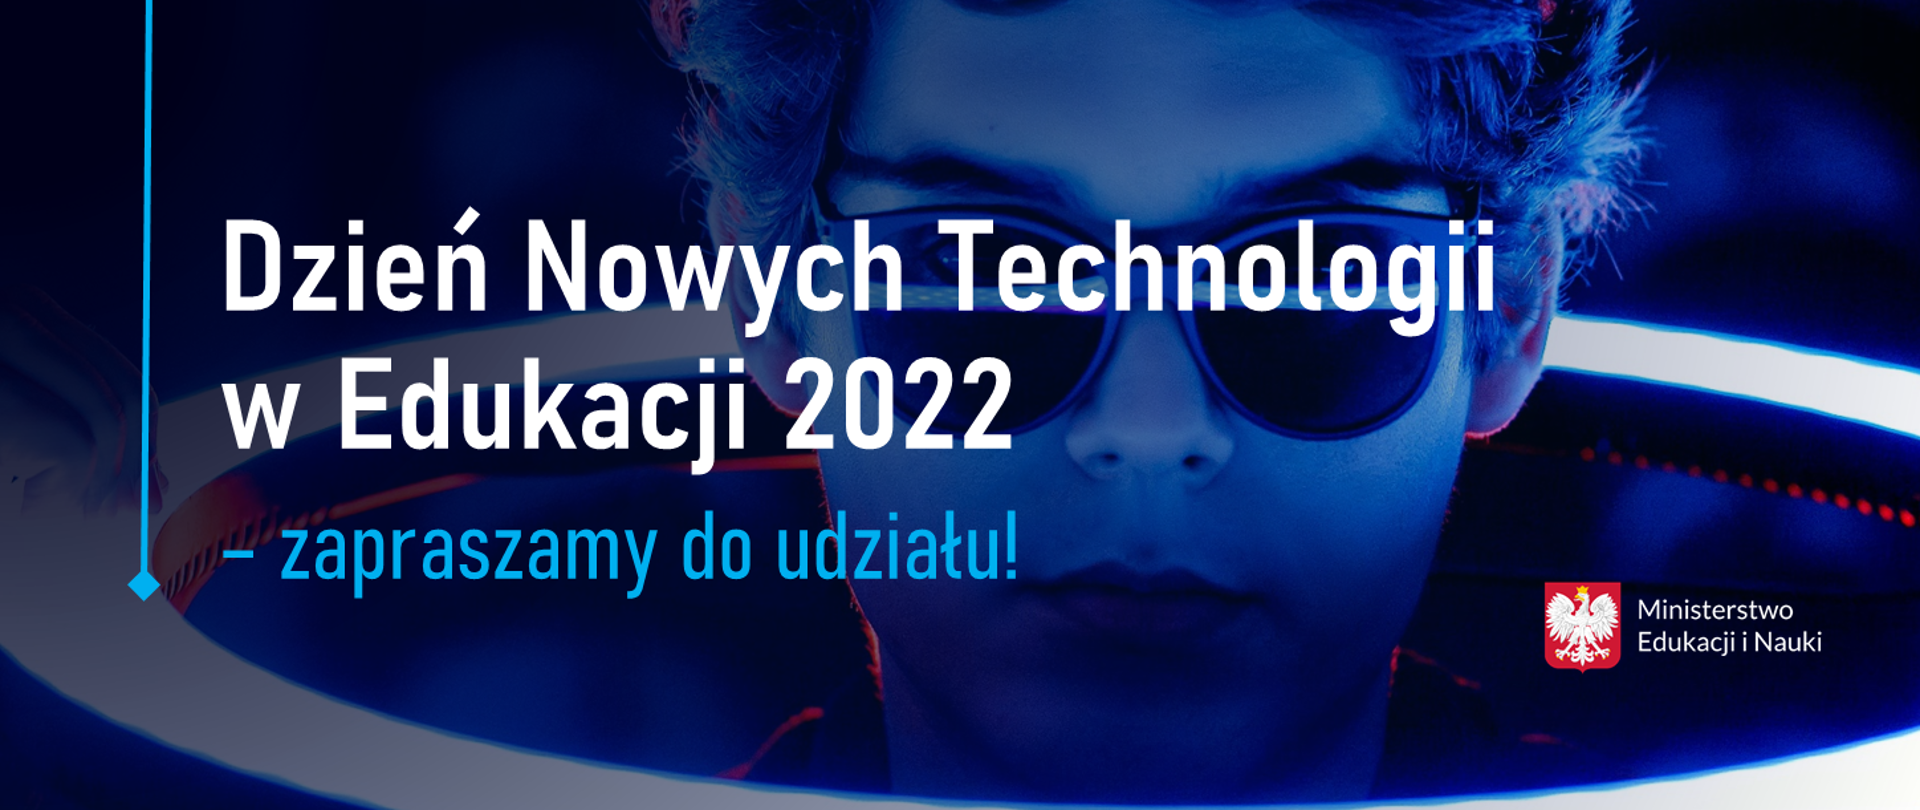 Grafika - na niebieskim tle napis Dzień Nowych Technologii w Edukacji 2022 – zapraszamy do udziału! W tle grafiki głowa chłopaka w okularach przeciwsłonecznych.